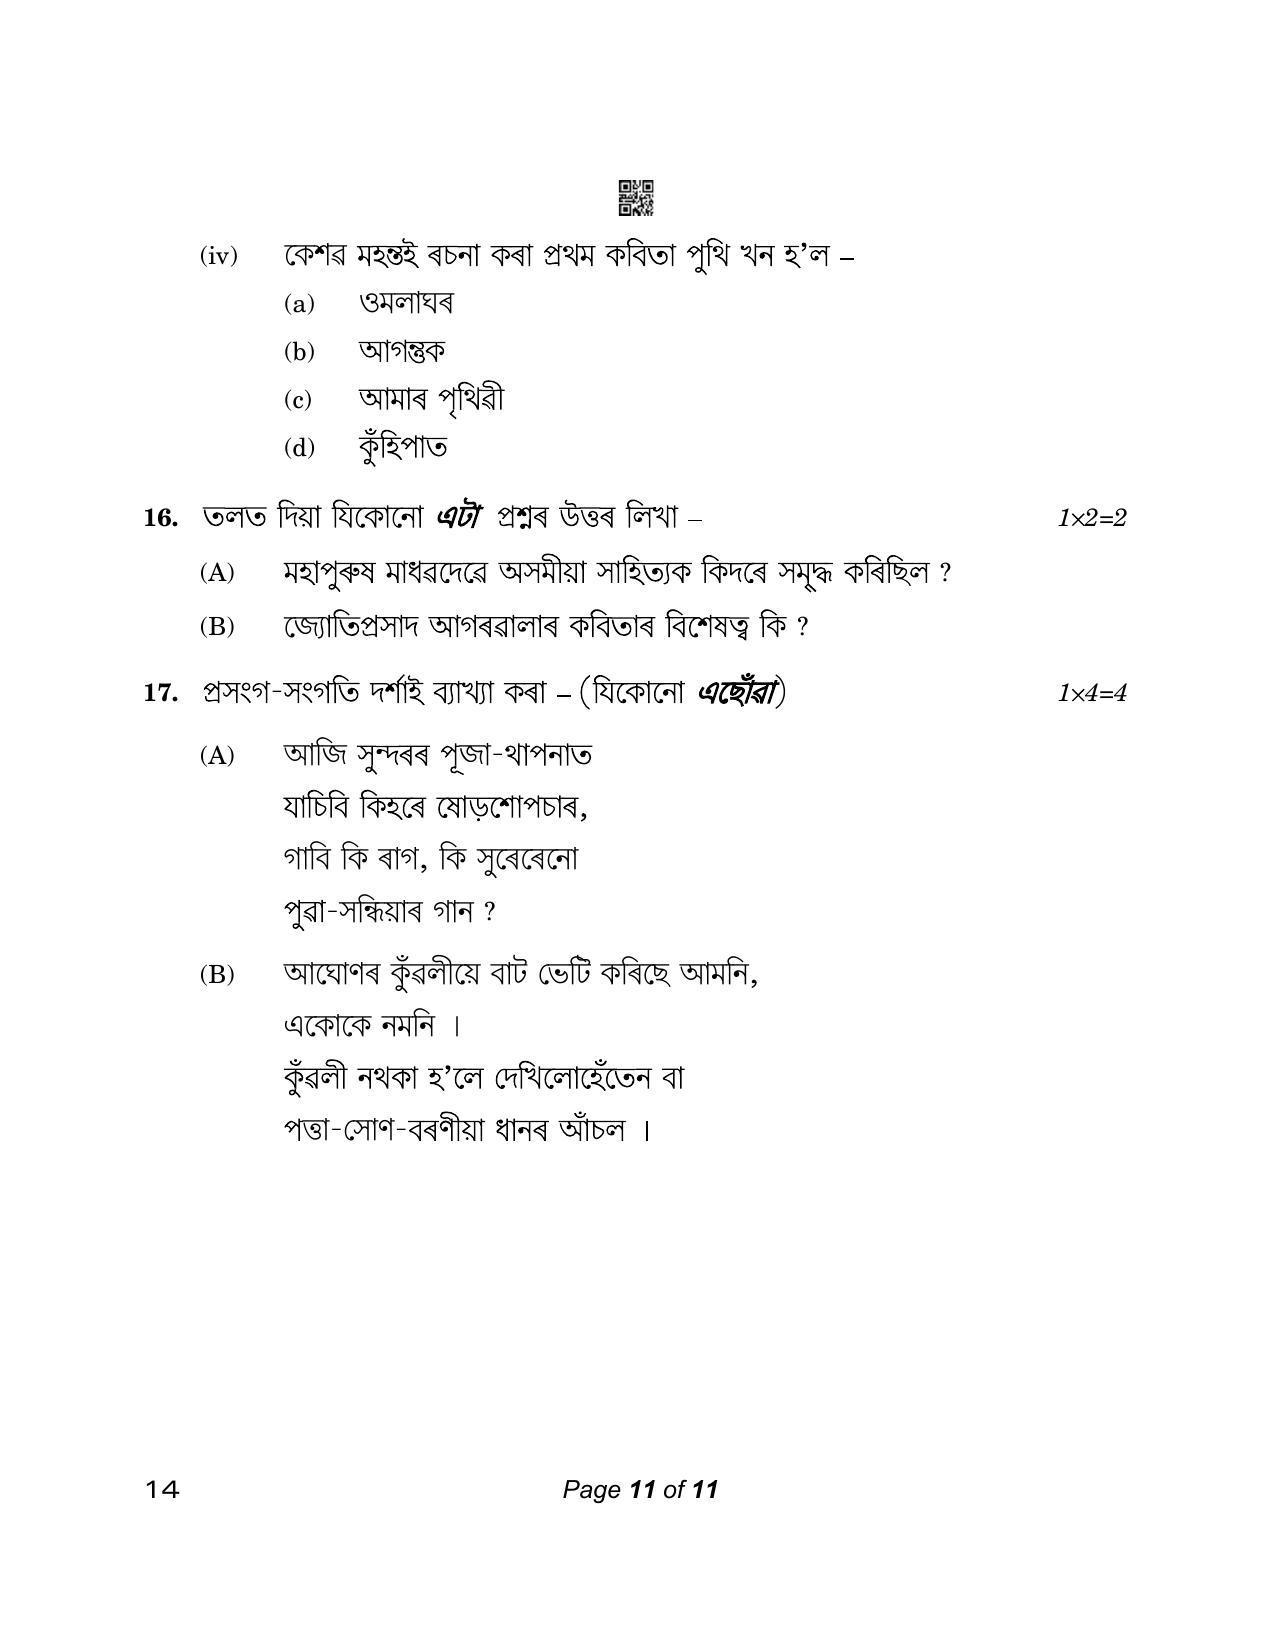 CBSE Class 12 14_Assamese 2023 Question Paper - Page 11